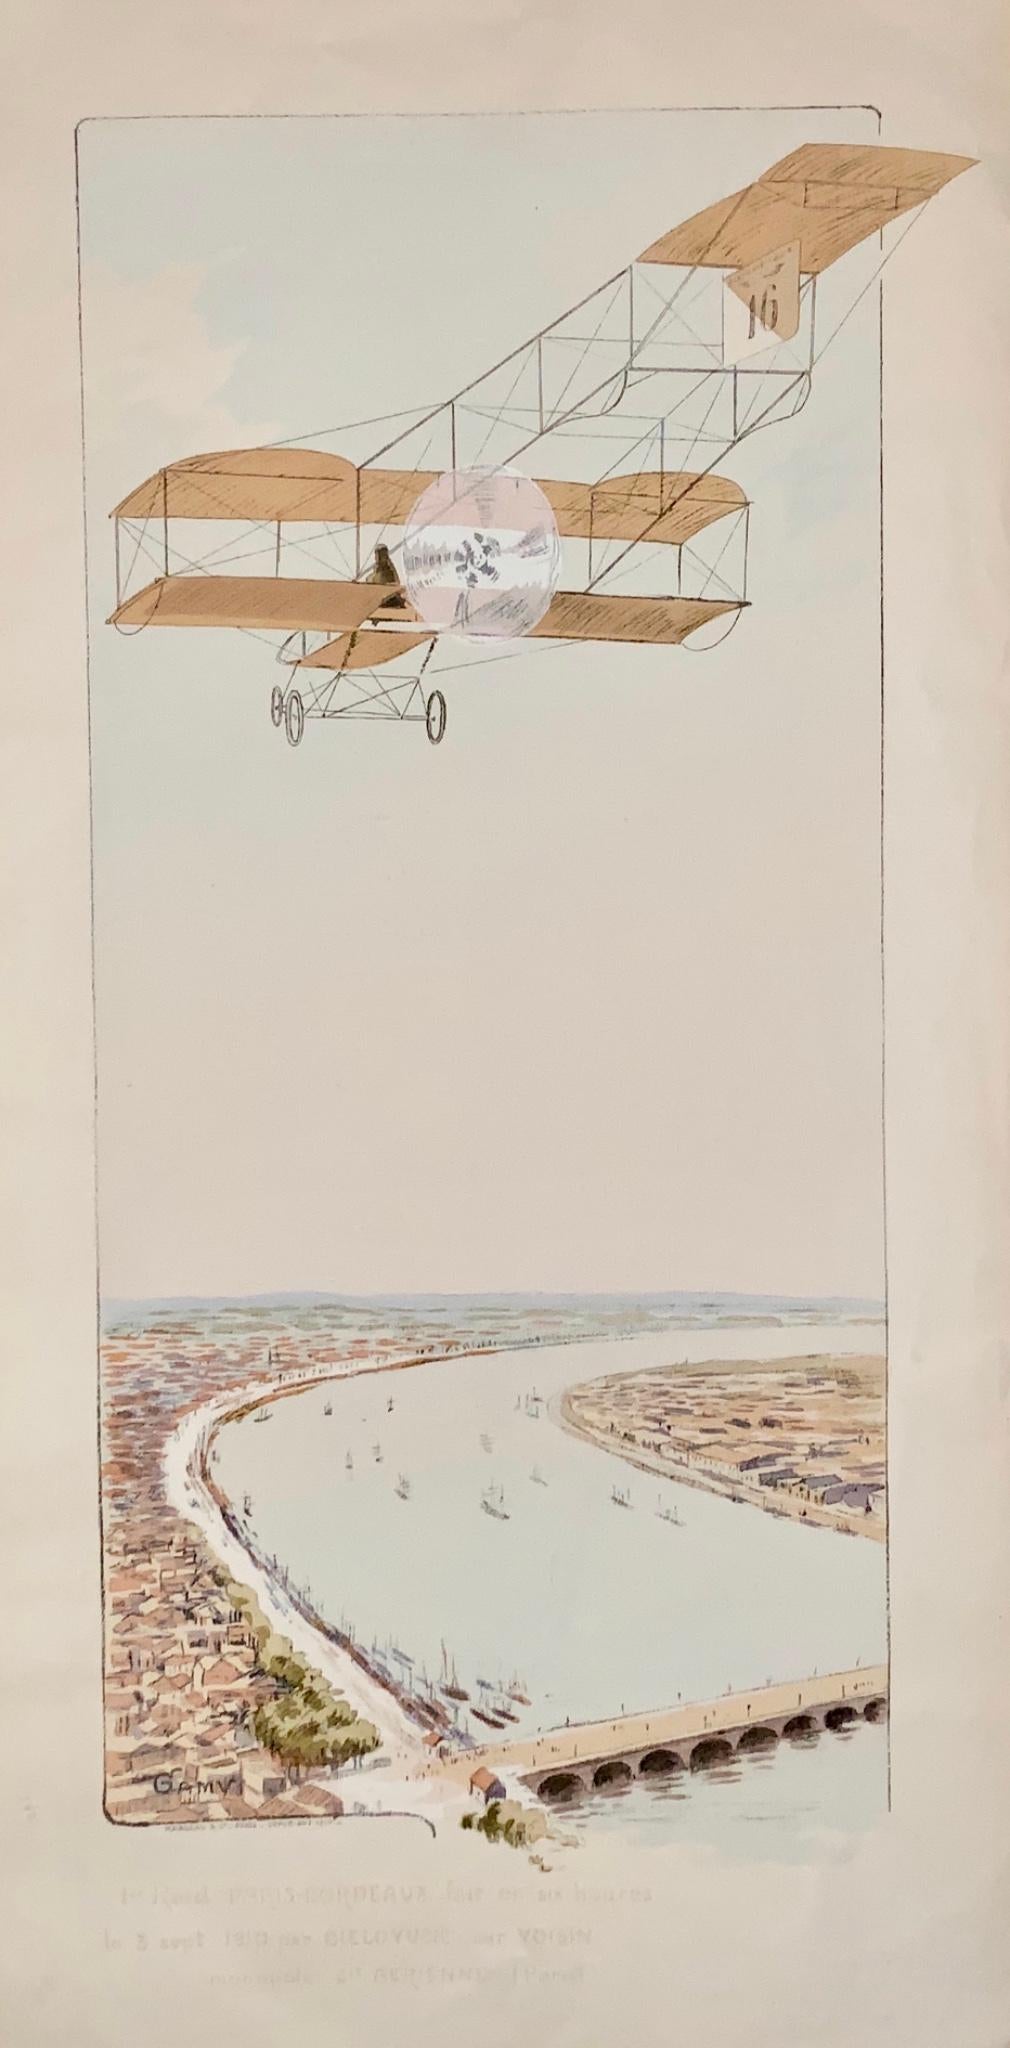 1910 Montaut, Ernest Aviation Race sopra Parigi, pochoir colorato, 89,5 cm, poster di trasporto e viaggio